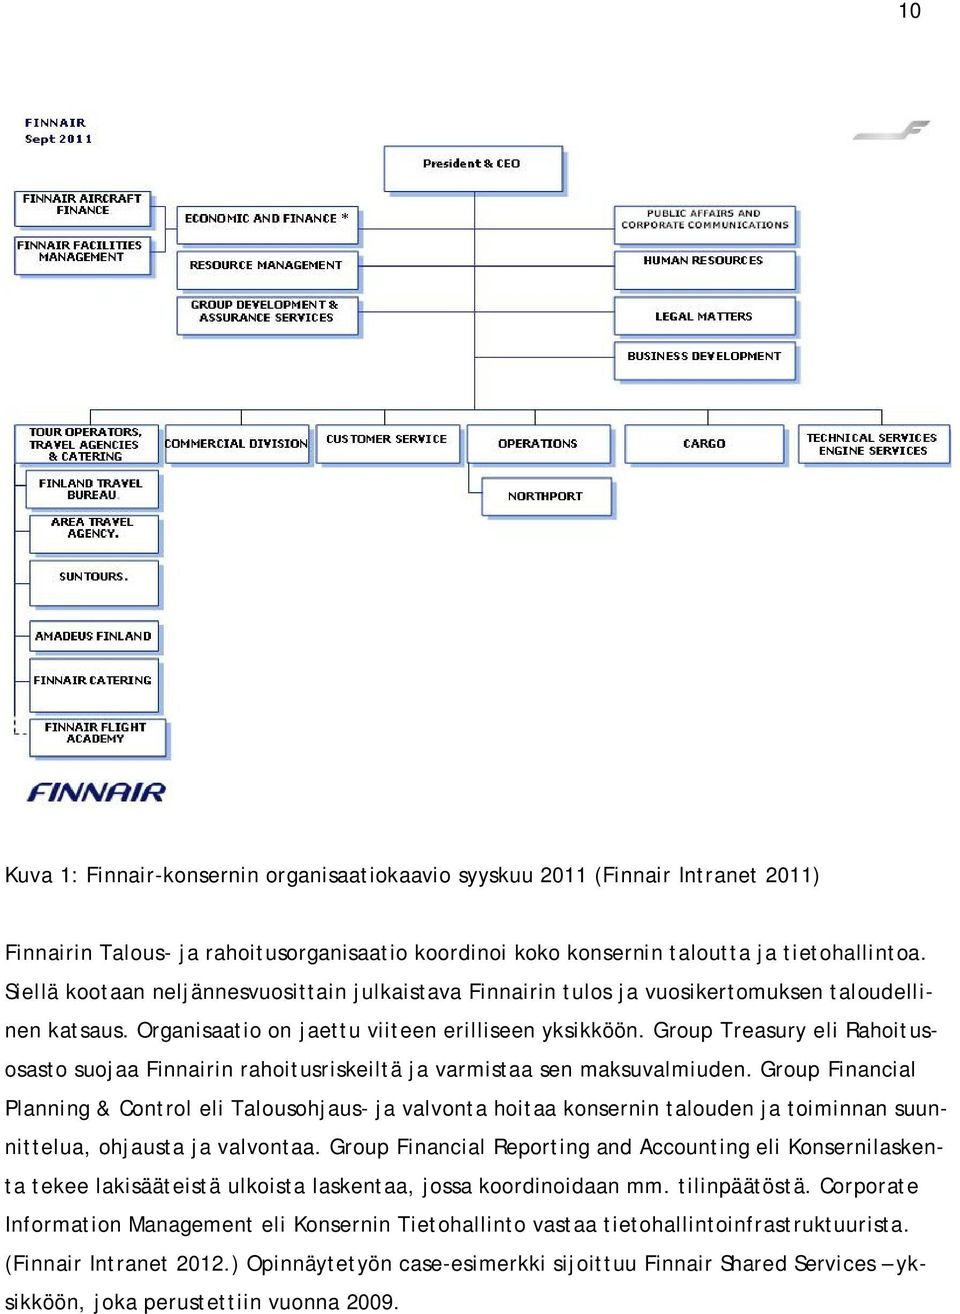 Group Treasury eli Rahoitusosasto suojaa Finnairin rahoitusriskeiltä ja varmistaa sen maksuvalmiuden.